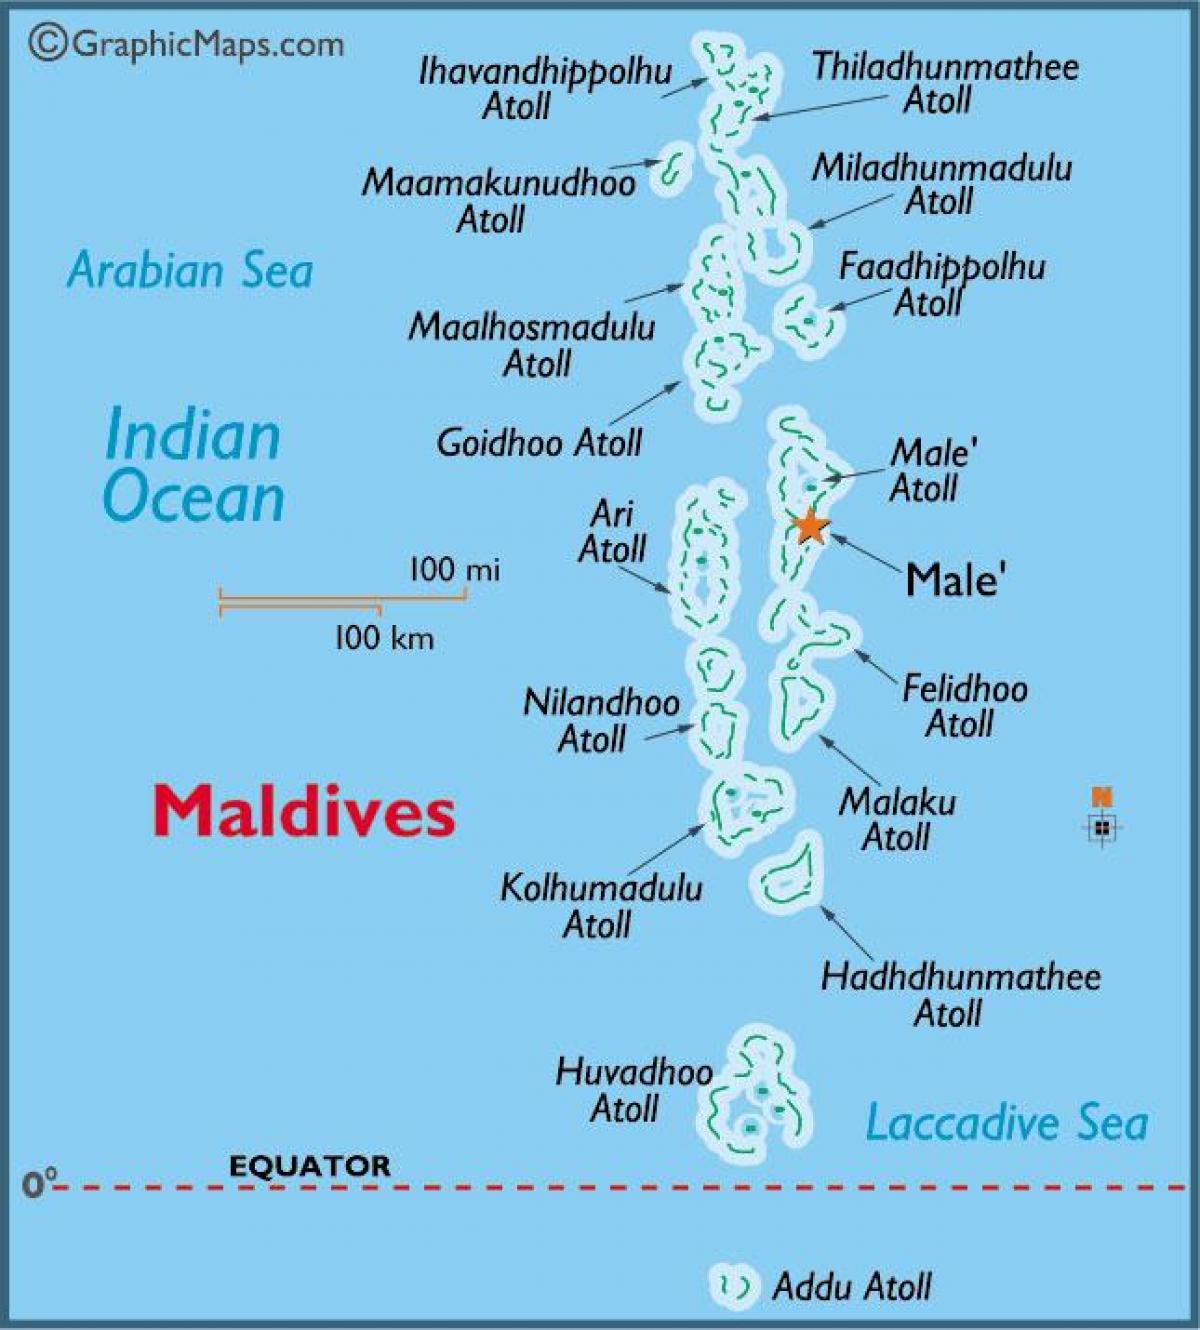 baa atoll ಮಾಲ್ಡೀವ್ಸ್ ನಕ್ಷೆ